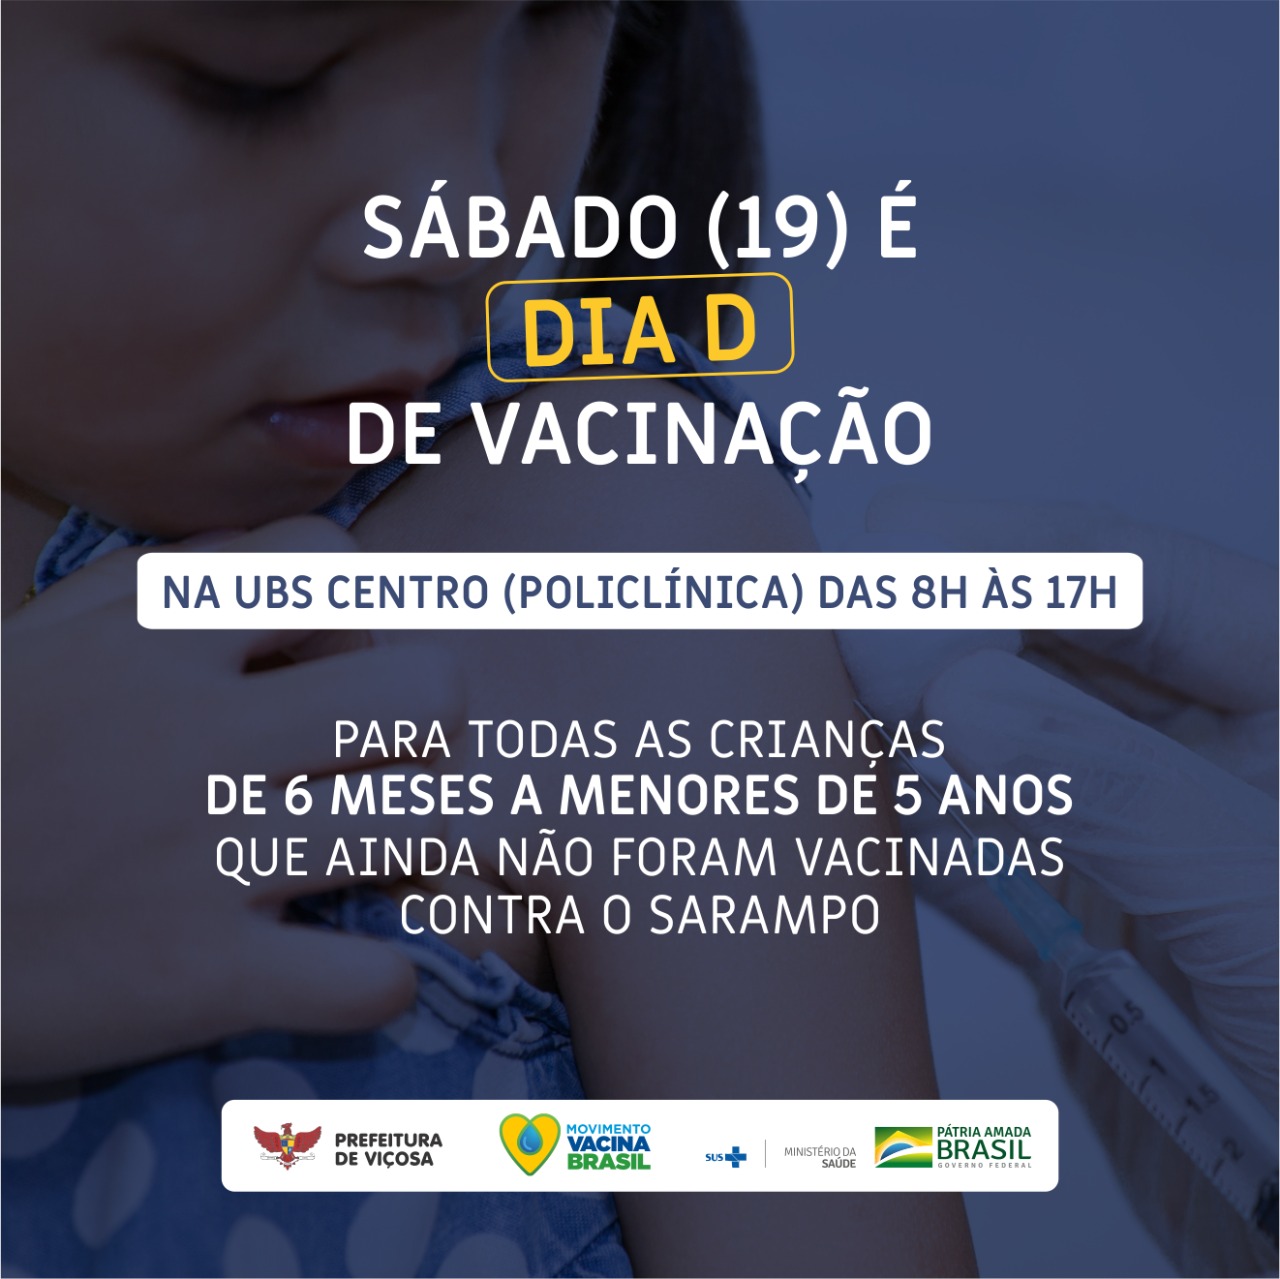 Viçosa realiza ‘Dia D’ de vacinação contra o sarampo neste sábado